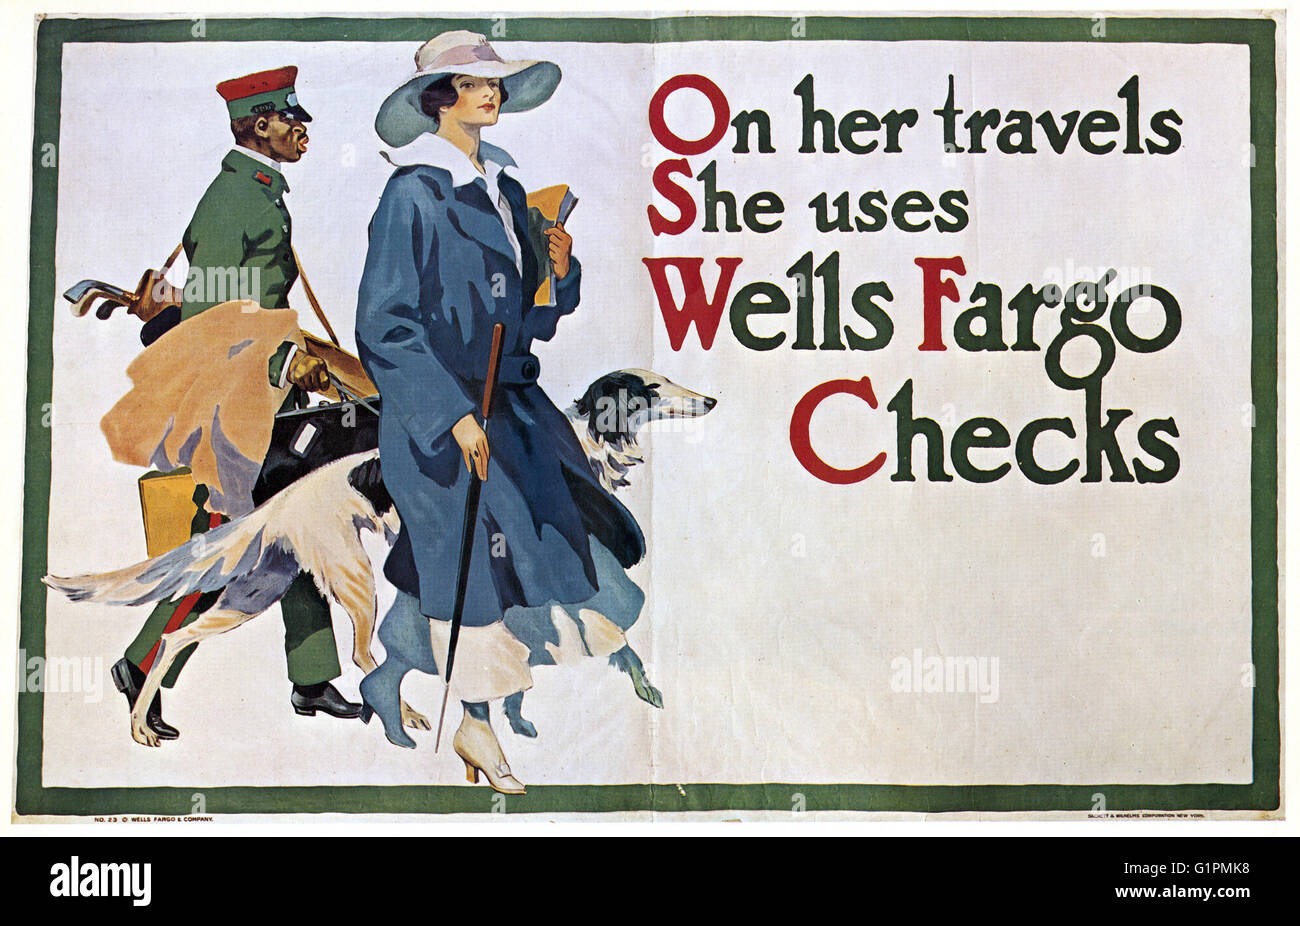 AD: WELLS FARGO, c1917.  Amerikanische Werbung für Wells Fargo Reiseschecks. Lithographie, c1917. Stockfoto